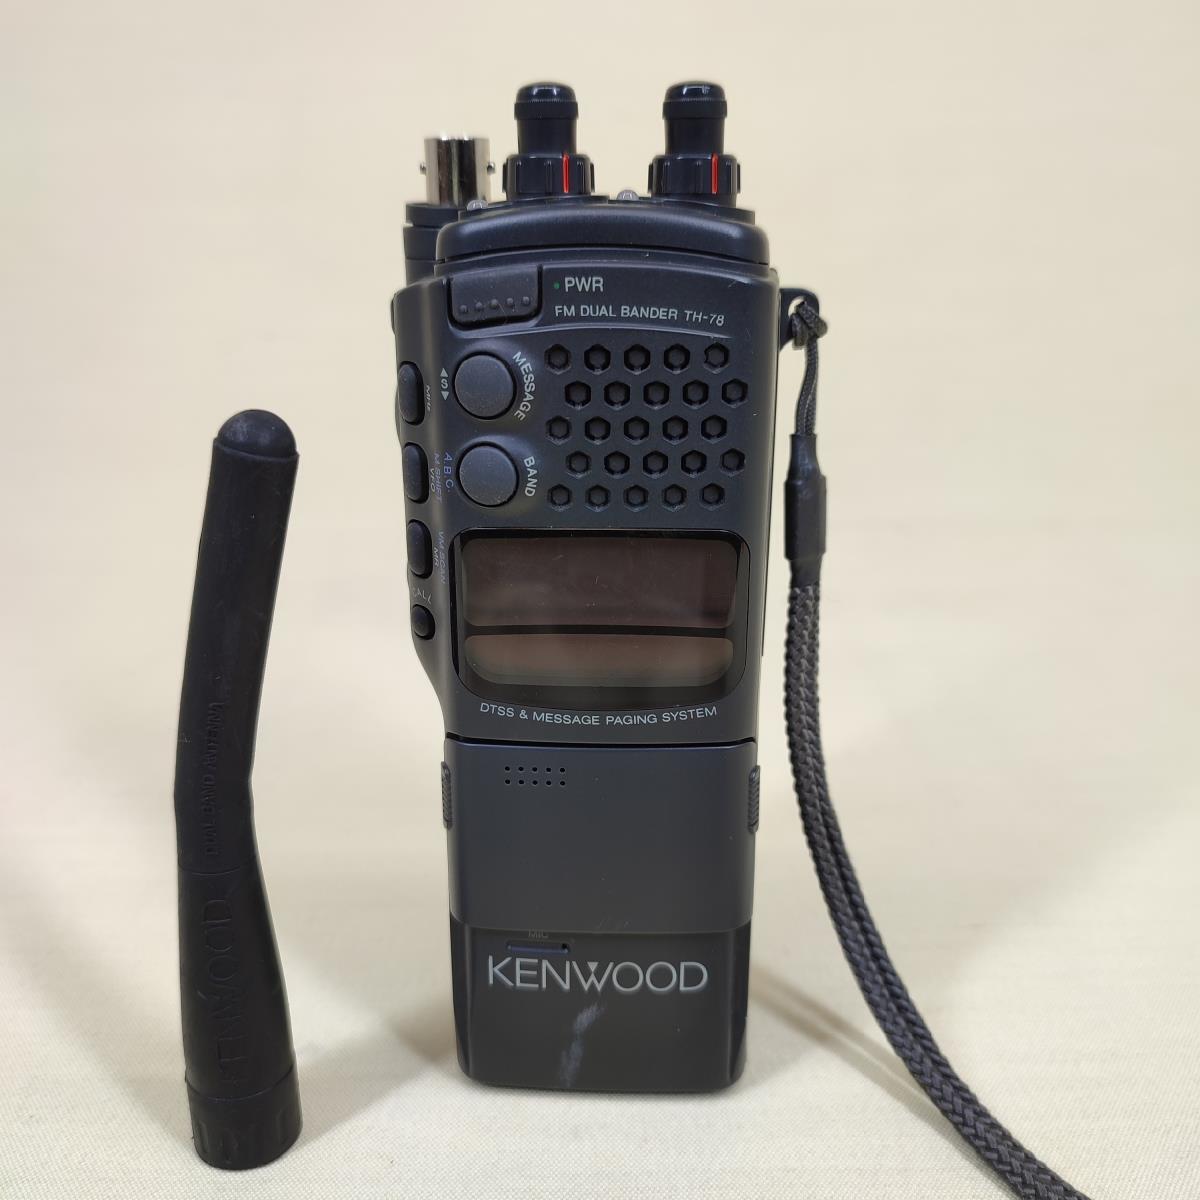 KENWOOD TH-78 144/430 MHz 5W FM デュアルバンド アマチュア無線 